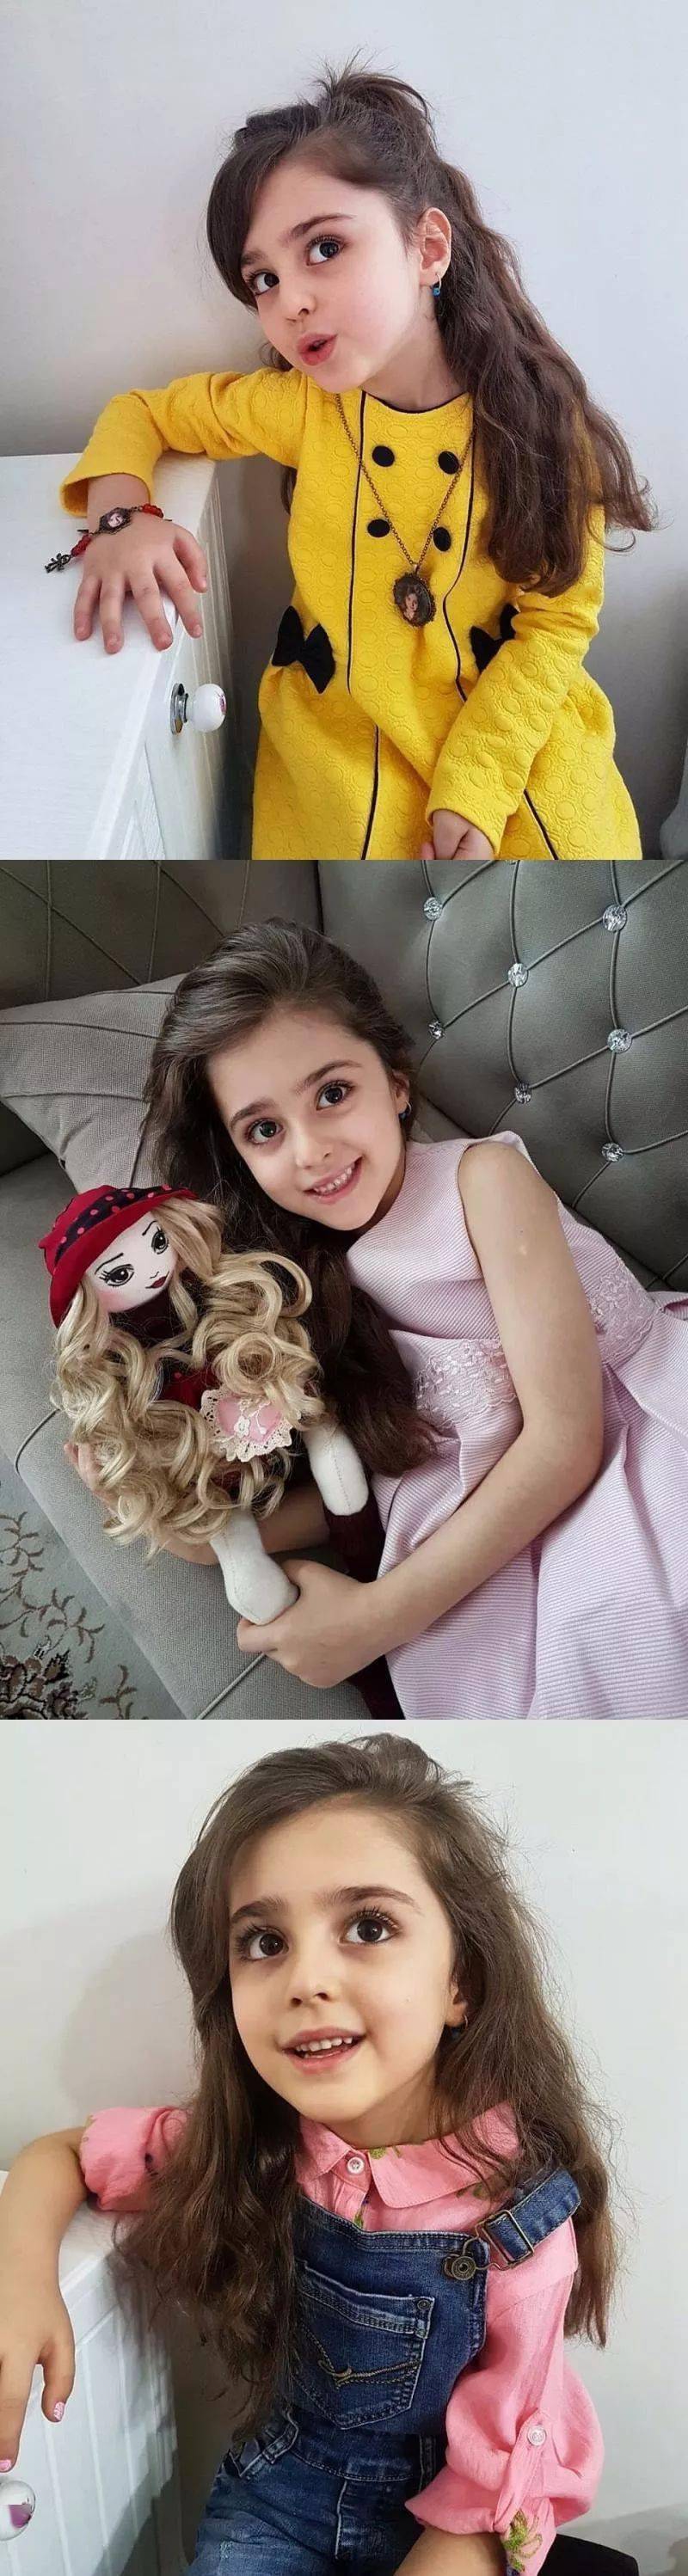 伊朗10岁全球最美女孩因太美父亲辞职做贴身保镖网友这就是洋娃娃本人